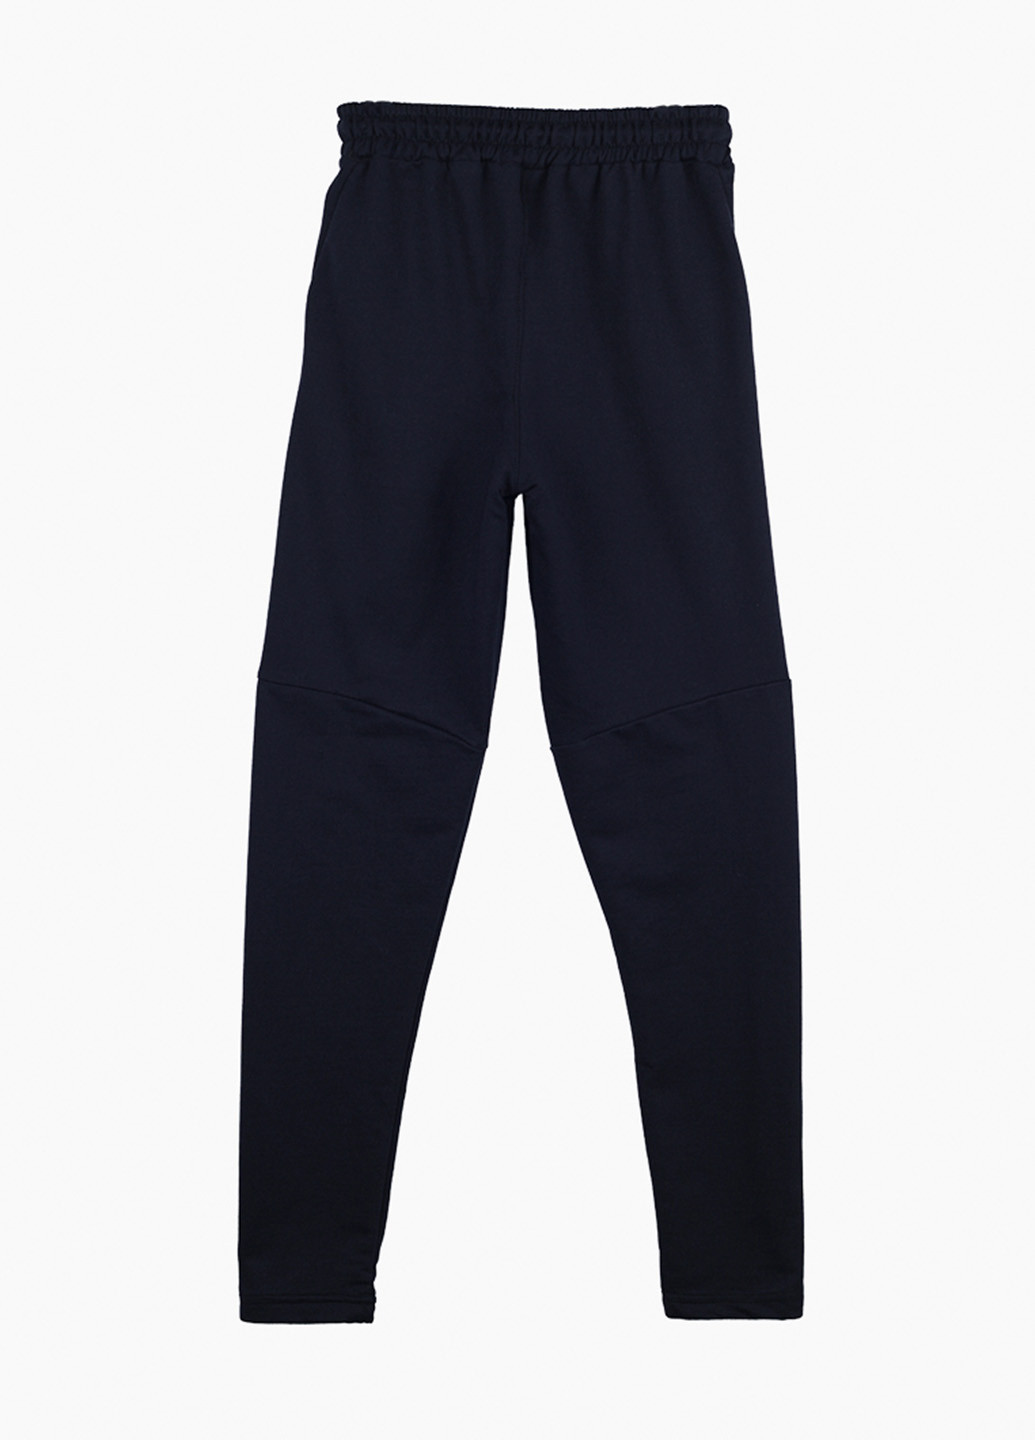 Темно-синие спортивные демисезонные брюки джоггеры Atescan